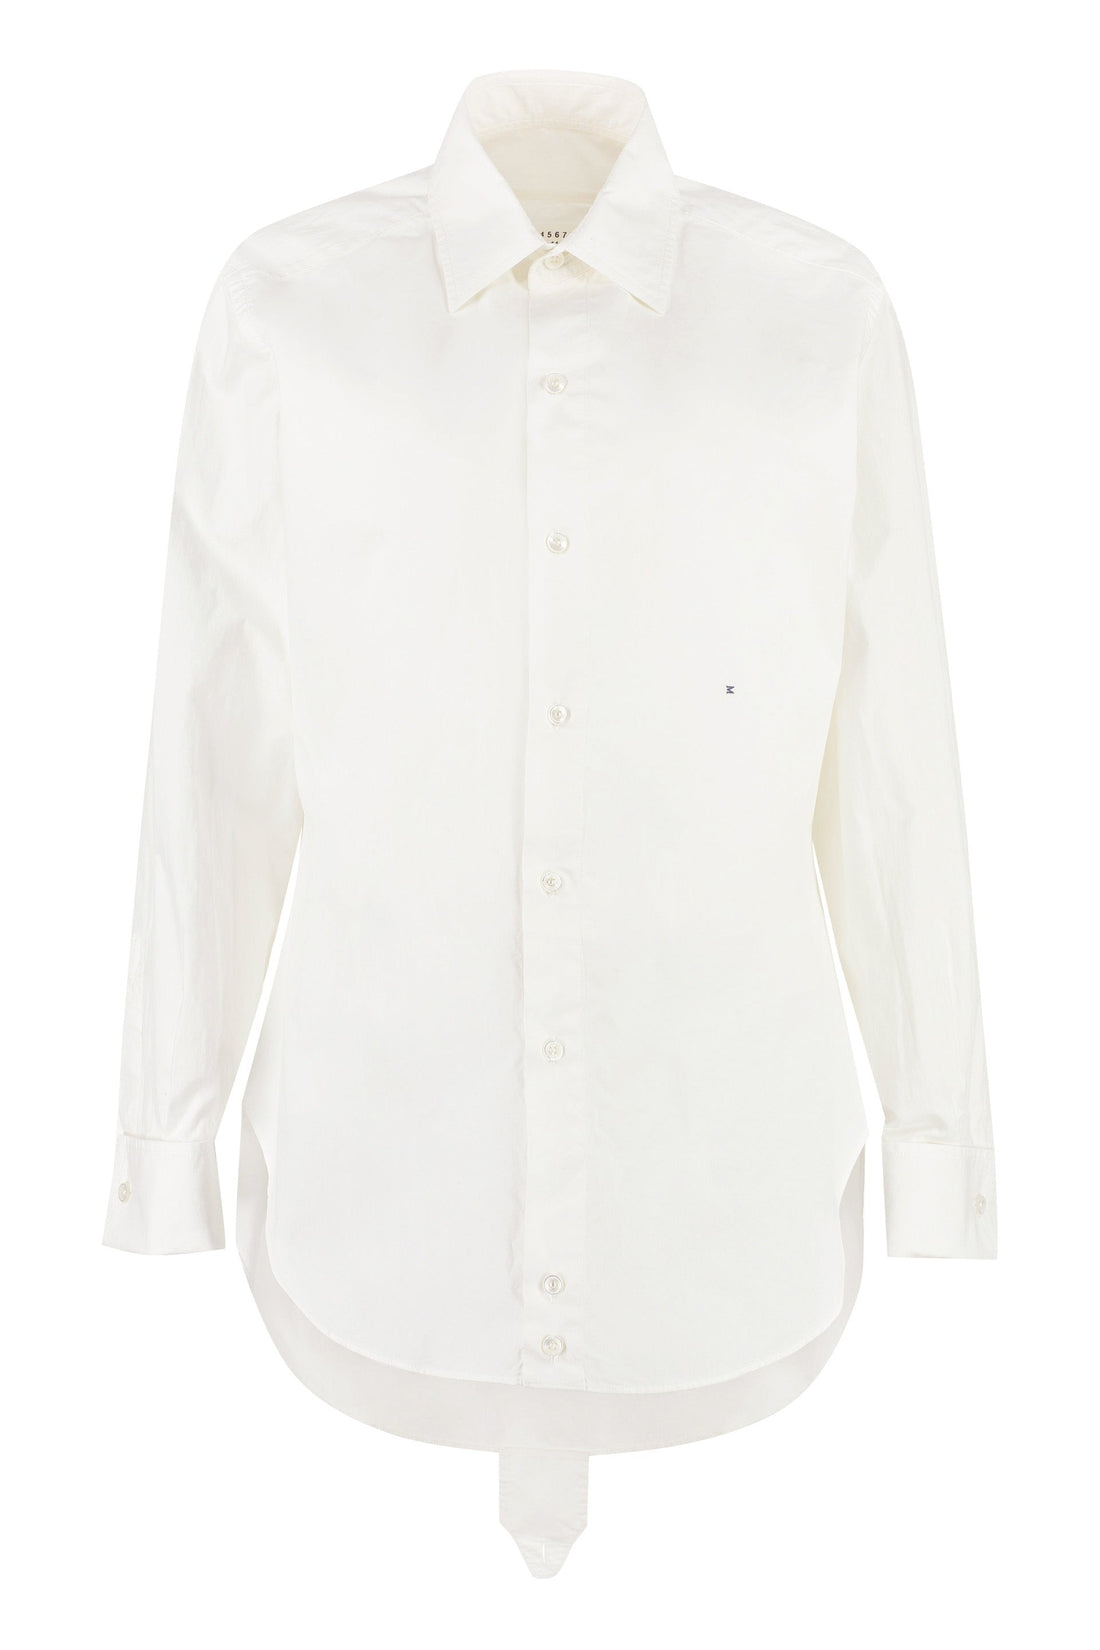 Maison Margiela-OUTLET-SALE-Long sleeve cotton shirt-ARCHIVIST